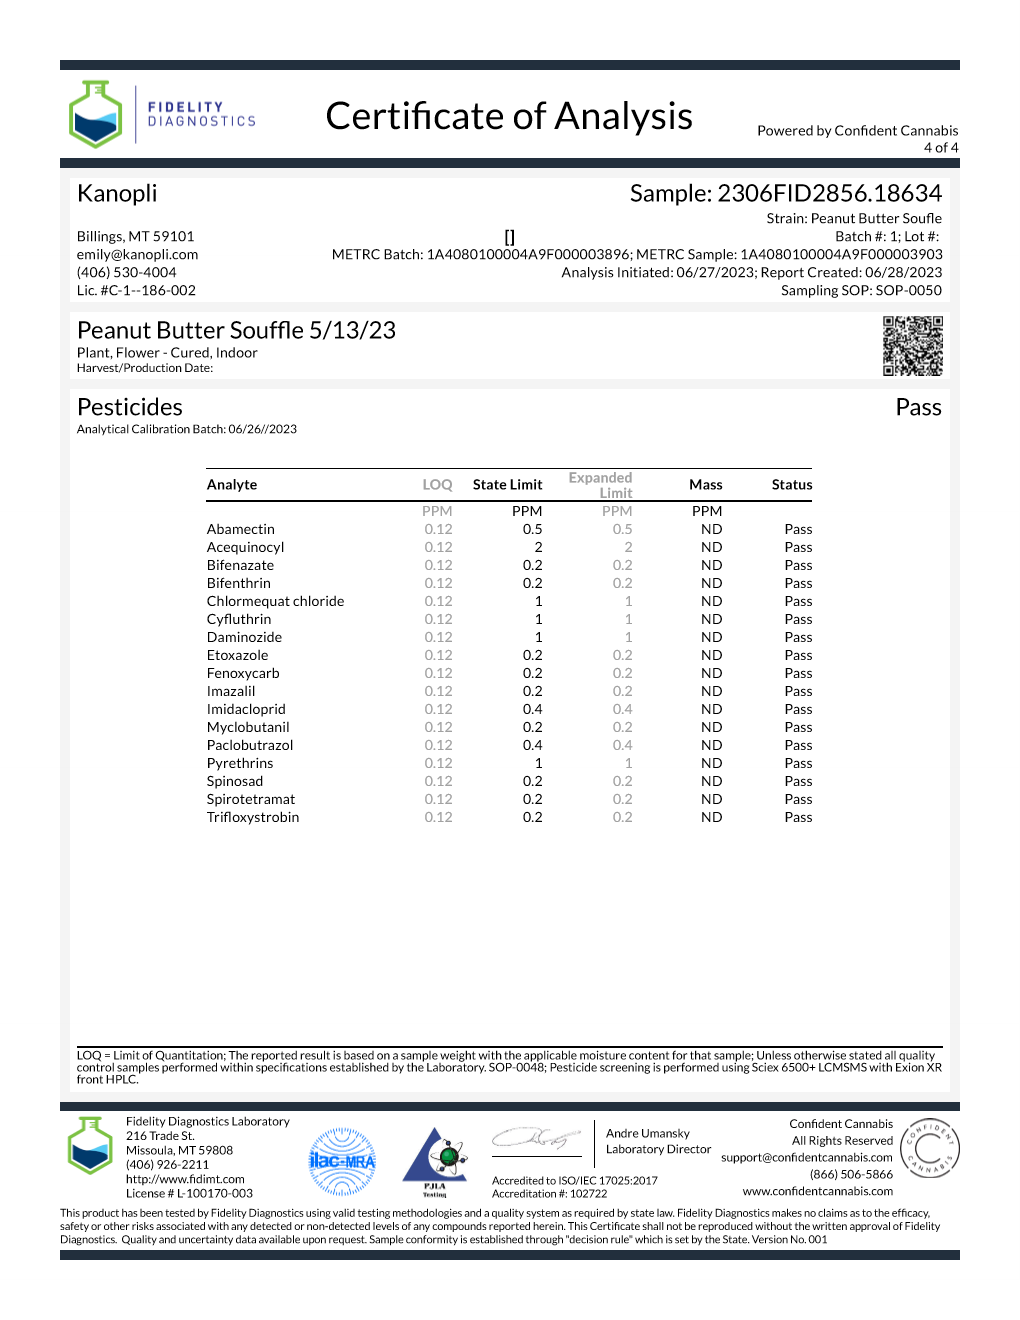 Danger Russ - Hybrid shake (23.28% THC) May 2023 (5 grams)